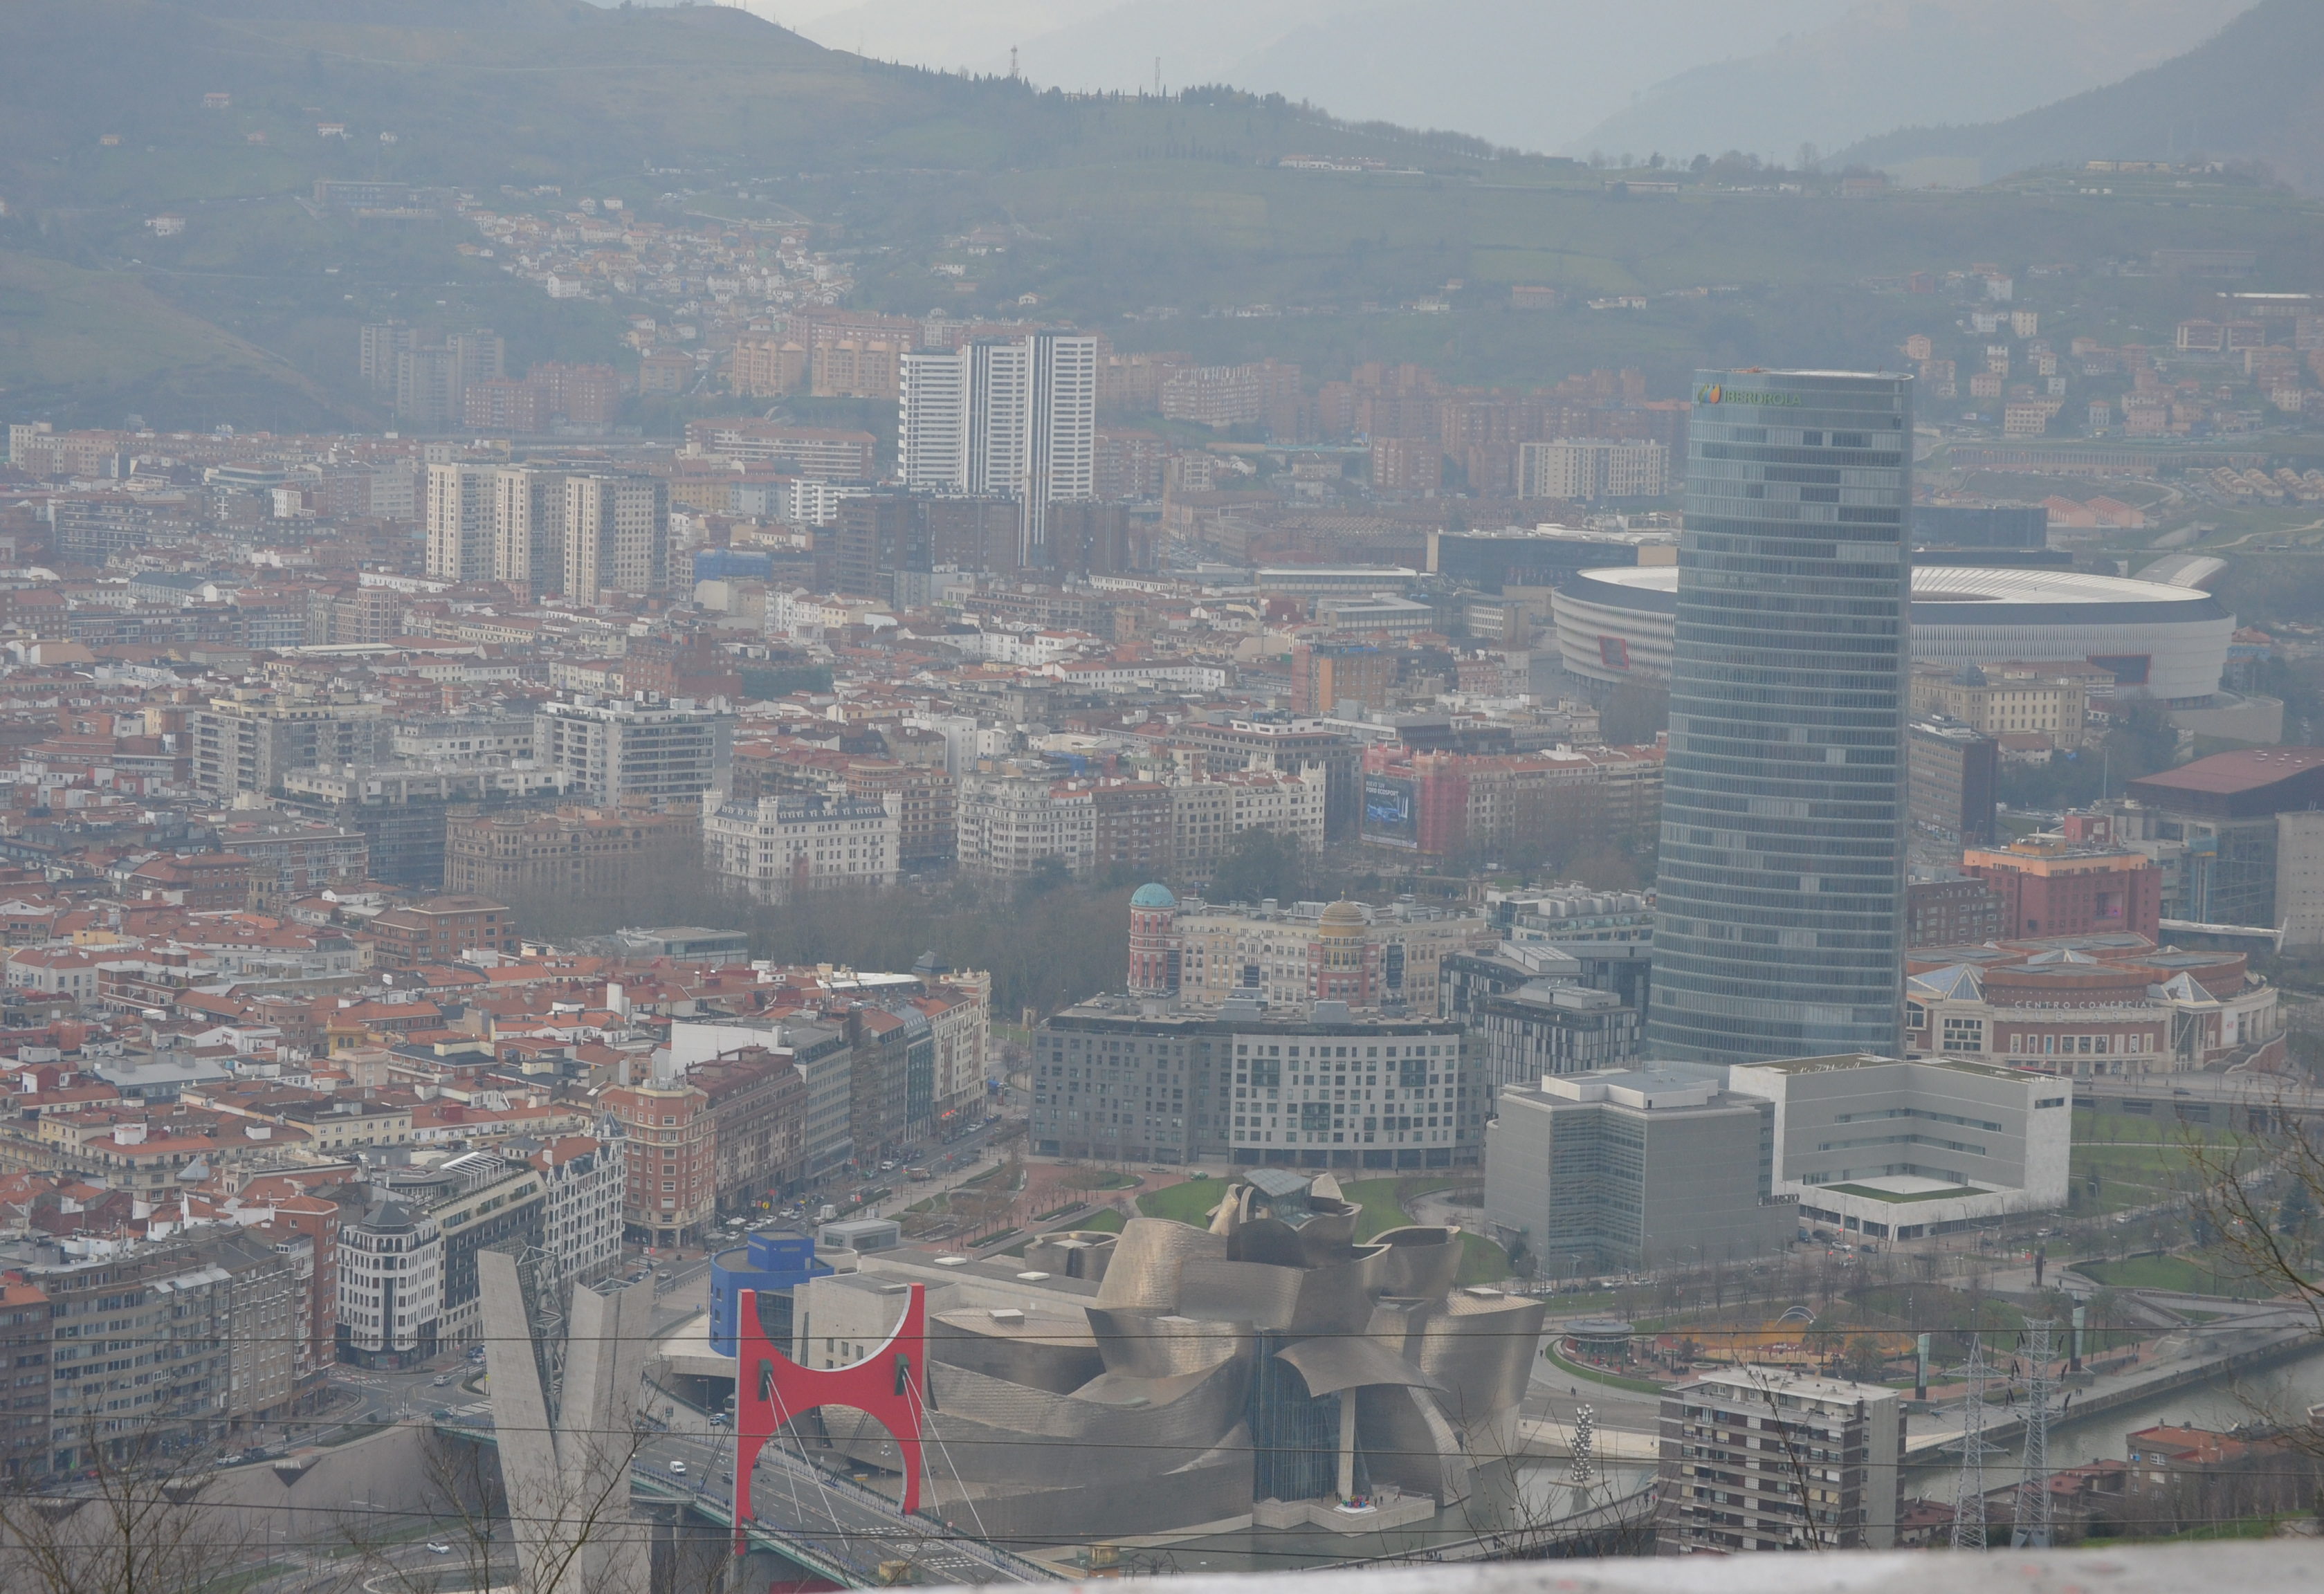 Quoi faire à Bilbao en 3 jours - Mirador de Artxanda Funicular de Artxanda quoi voir à Bilbao quoi faire à Bilbao Bilbao en 3 jours blog voyage les p'tits touristes